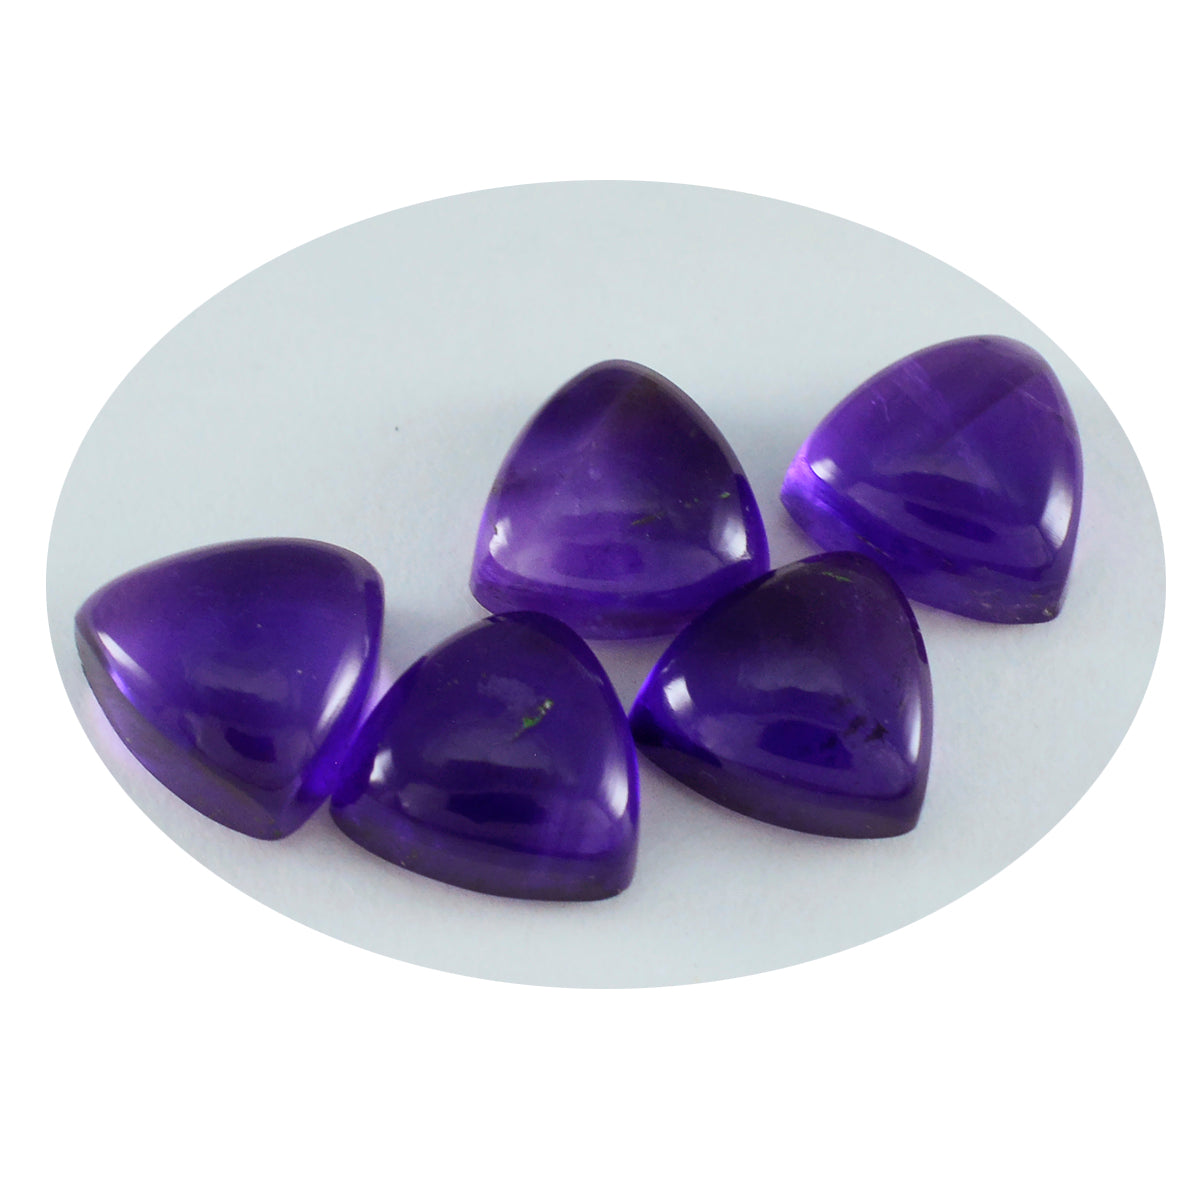 Riyogems 1 pieza cabujón de amatista púrpura 11x11mm forma de trillón piedra de calidad impresionante